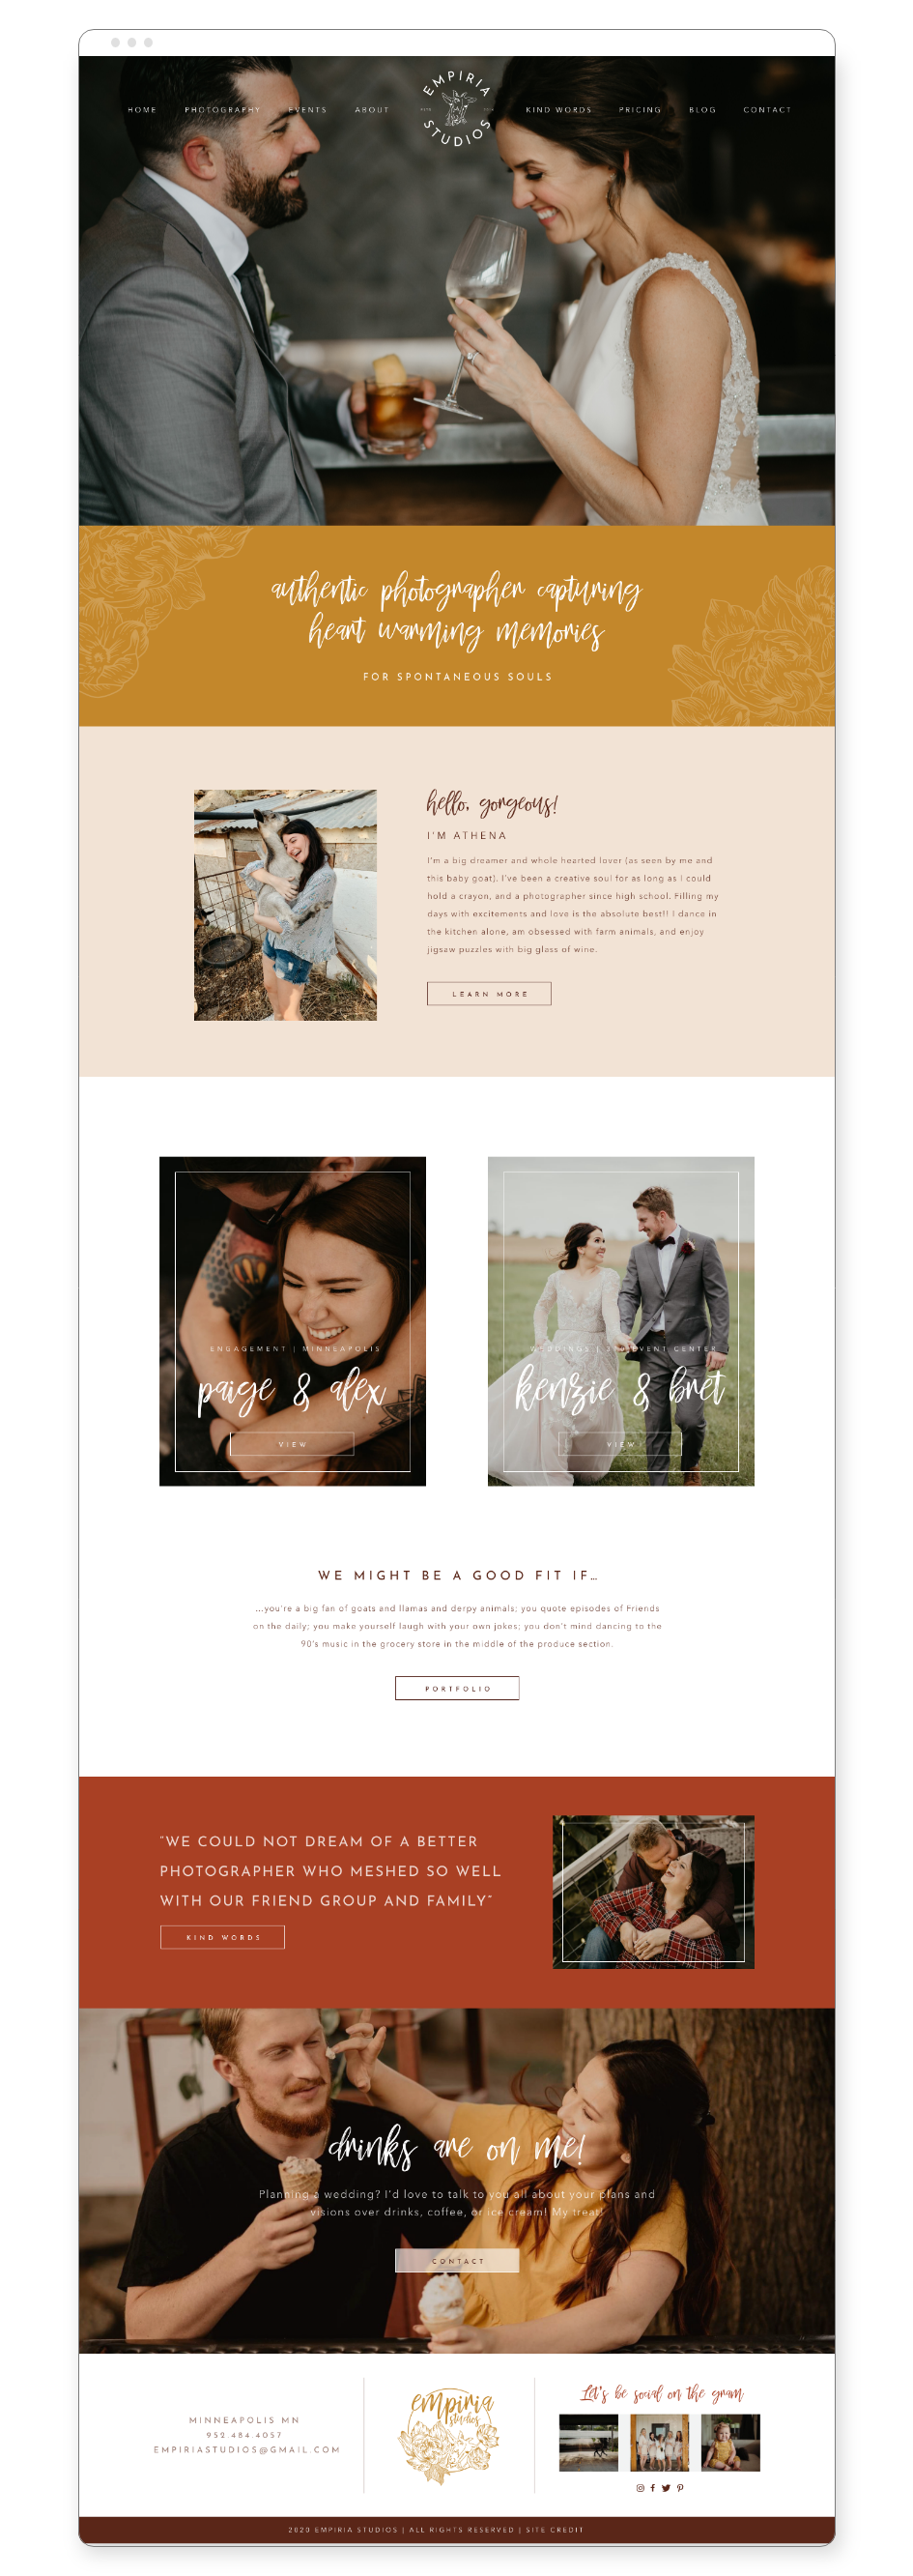 Empiria Studios custom home page design